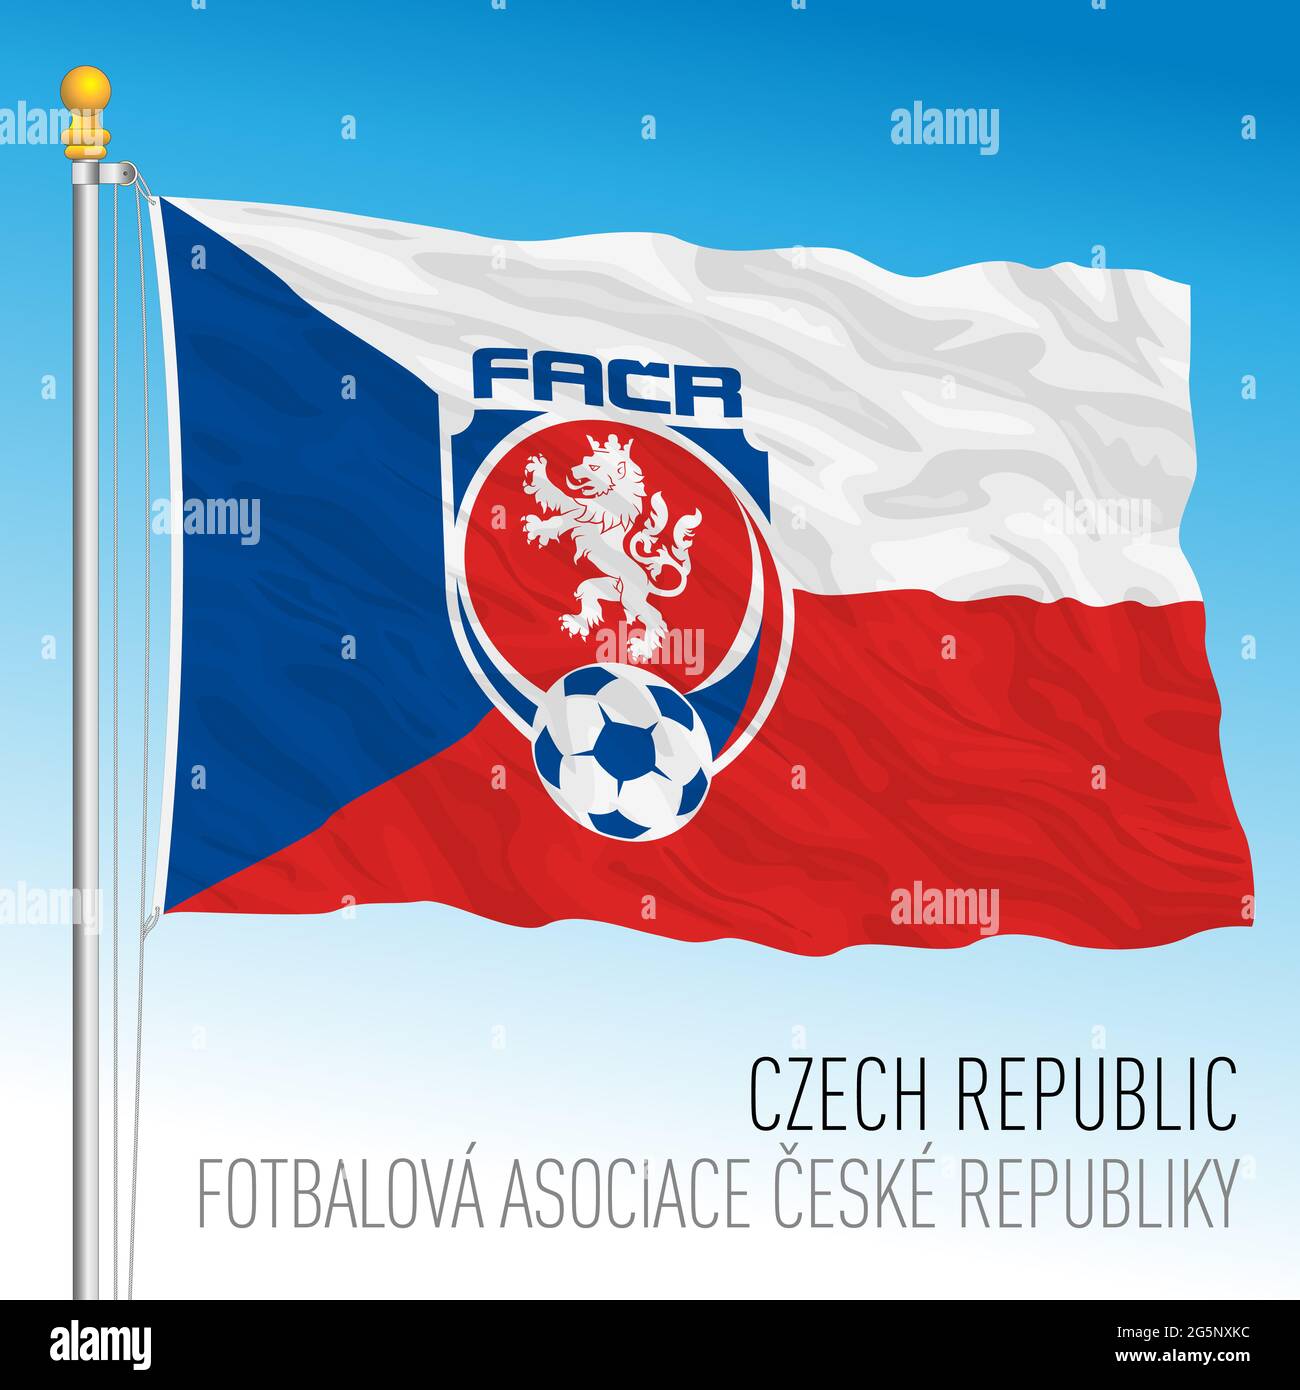 PRAGUE, RÉPUBLIQUE TCHÈQUE, juin 2021 - drapeau tchèque avec logo de la fédération nationale de football pour le championnat européen 2021 Banque D'Images